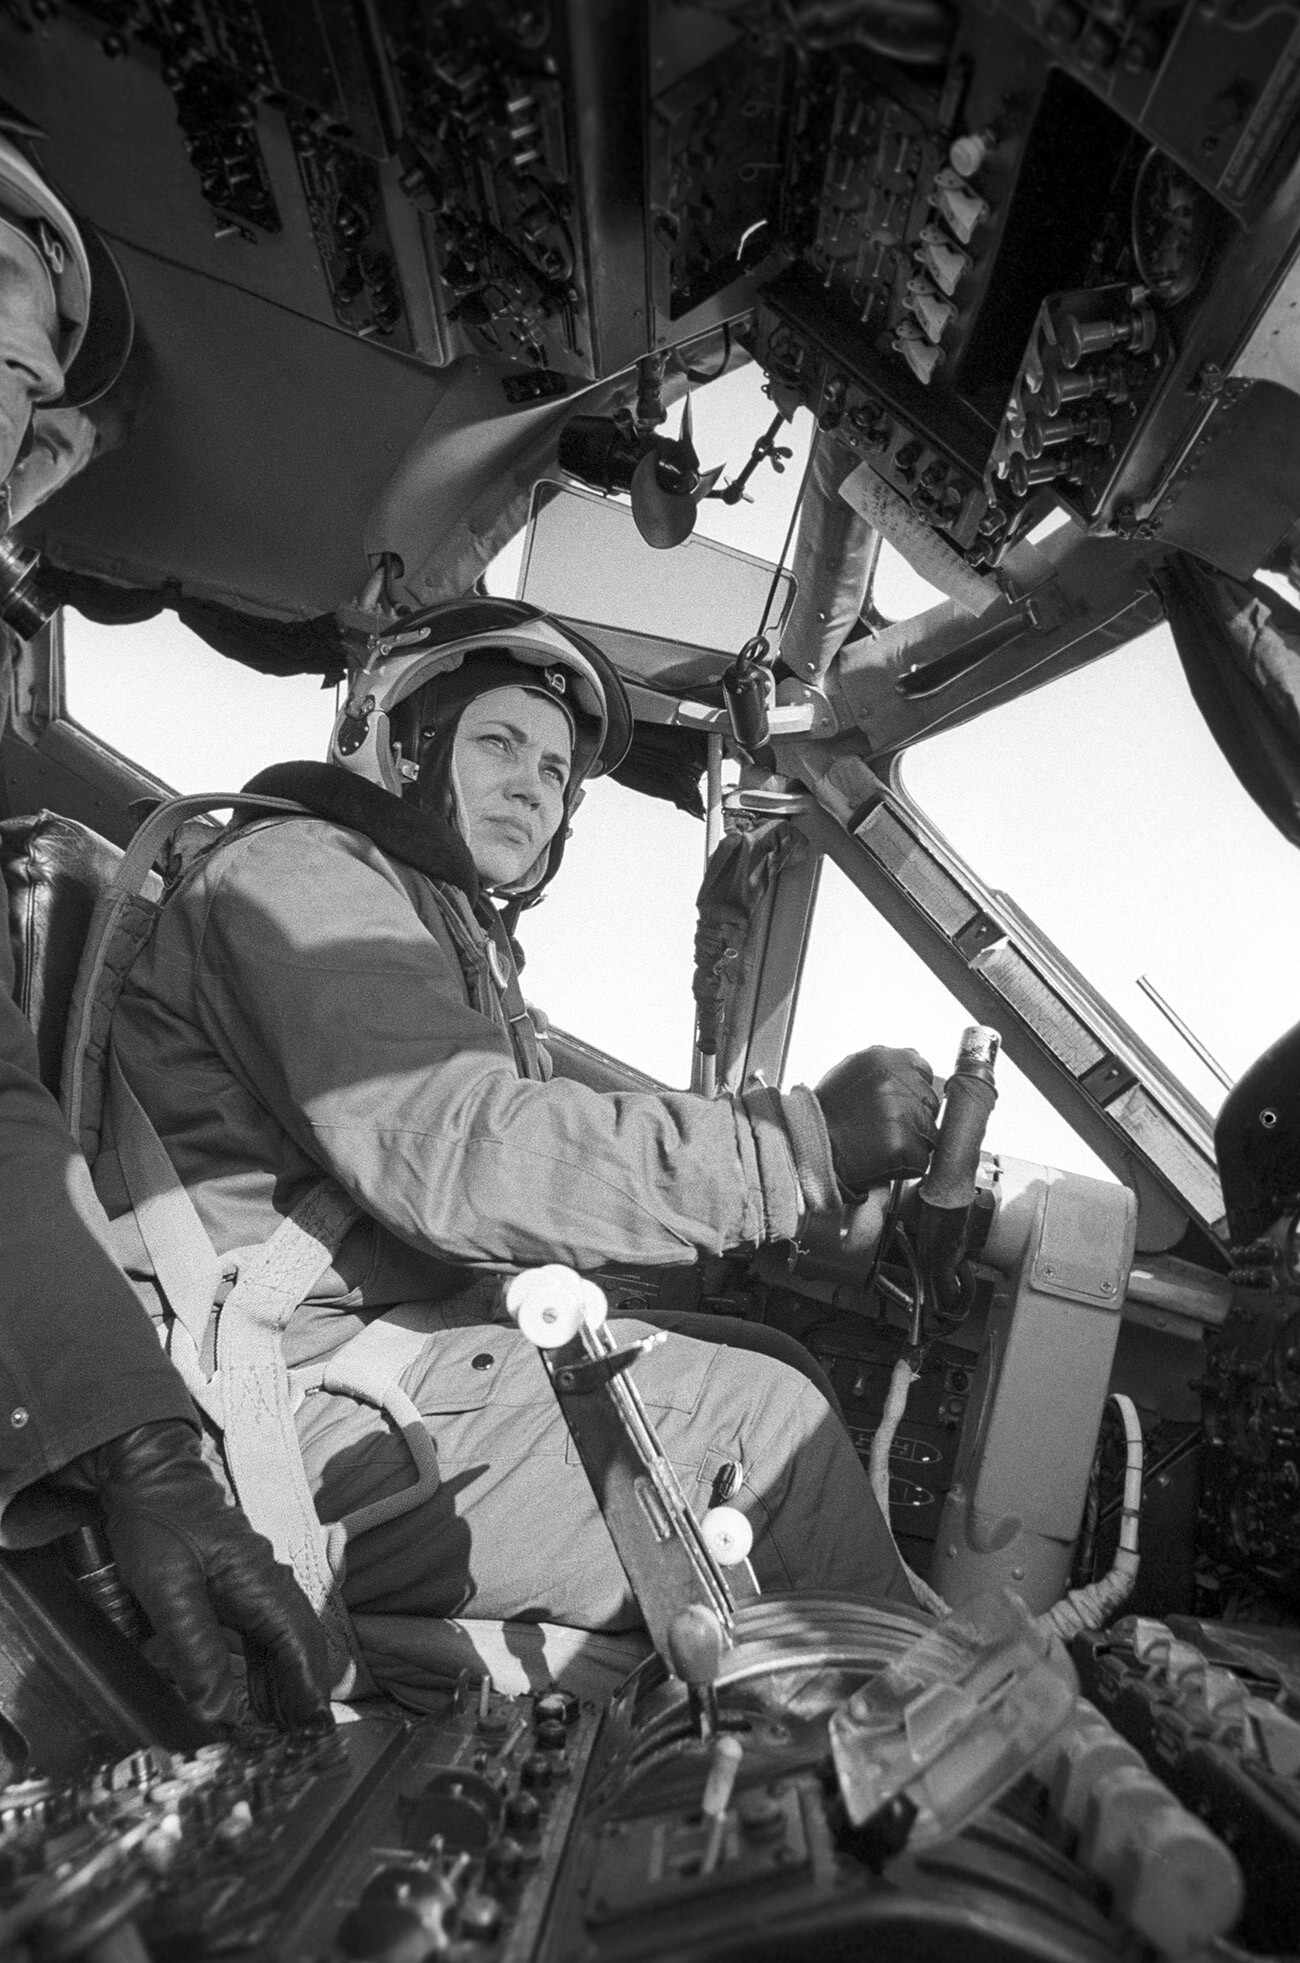 Testpilotin der ersten Klasse, Ehrenmeisterin des Sports der UdSSR, mehrfache Weltrekordhalterin Marina Popowitsch im Cockpit des schweren Turboprop-Transportflugzeugs AN-22 vor einem Testflug. Das genaue Datum und der Ort der Aufnahme sind nicht bekannt.